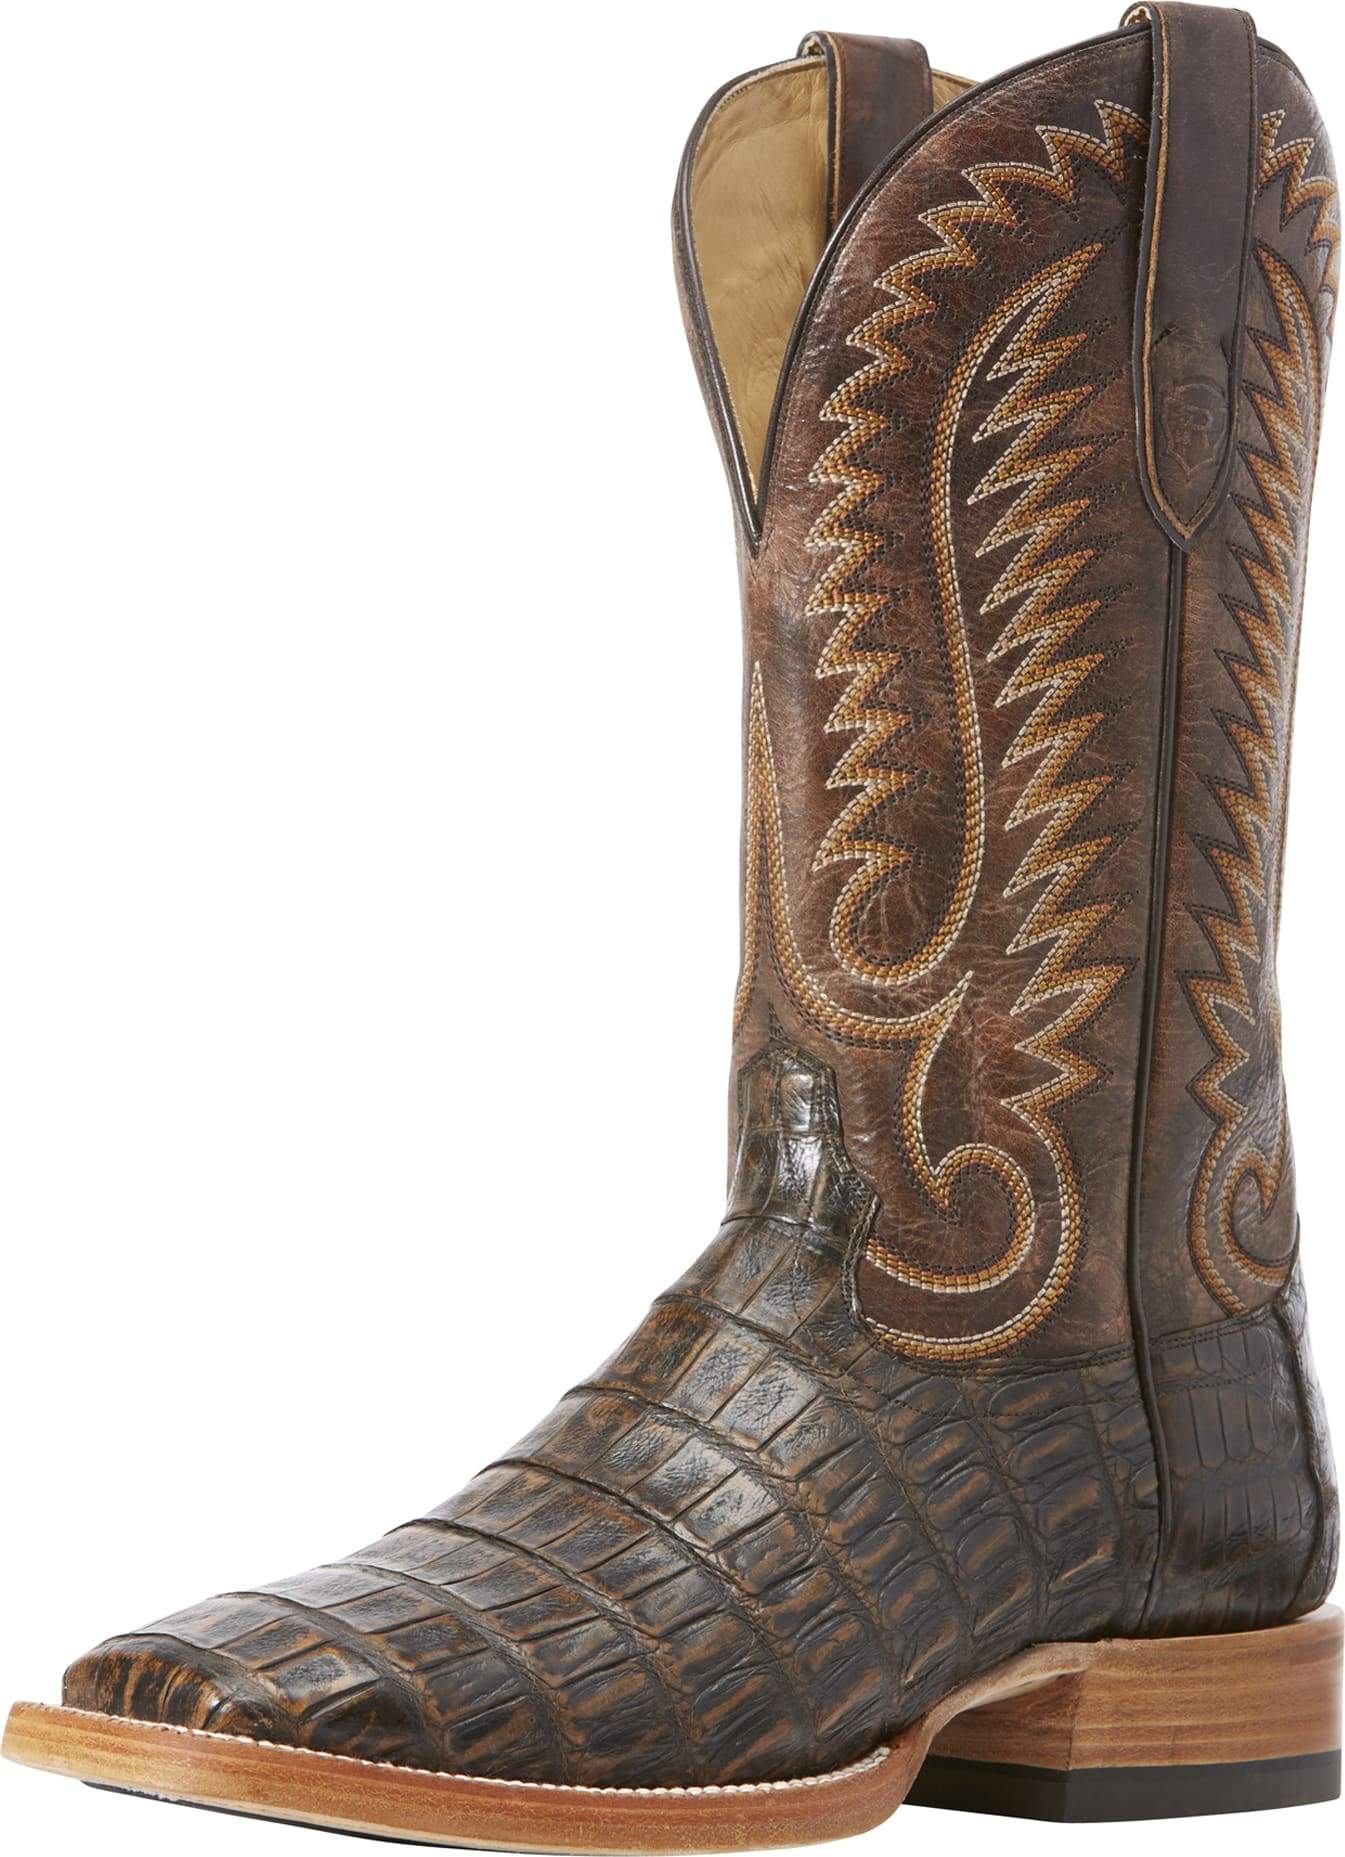 ariat women's caiman boots